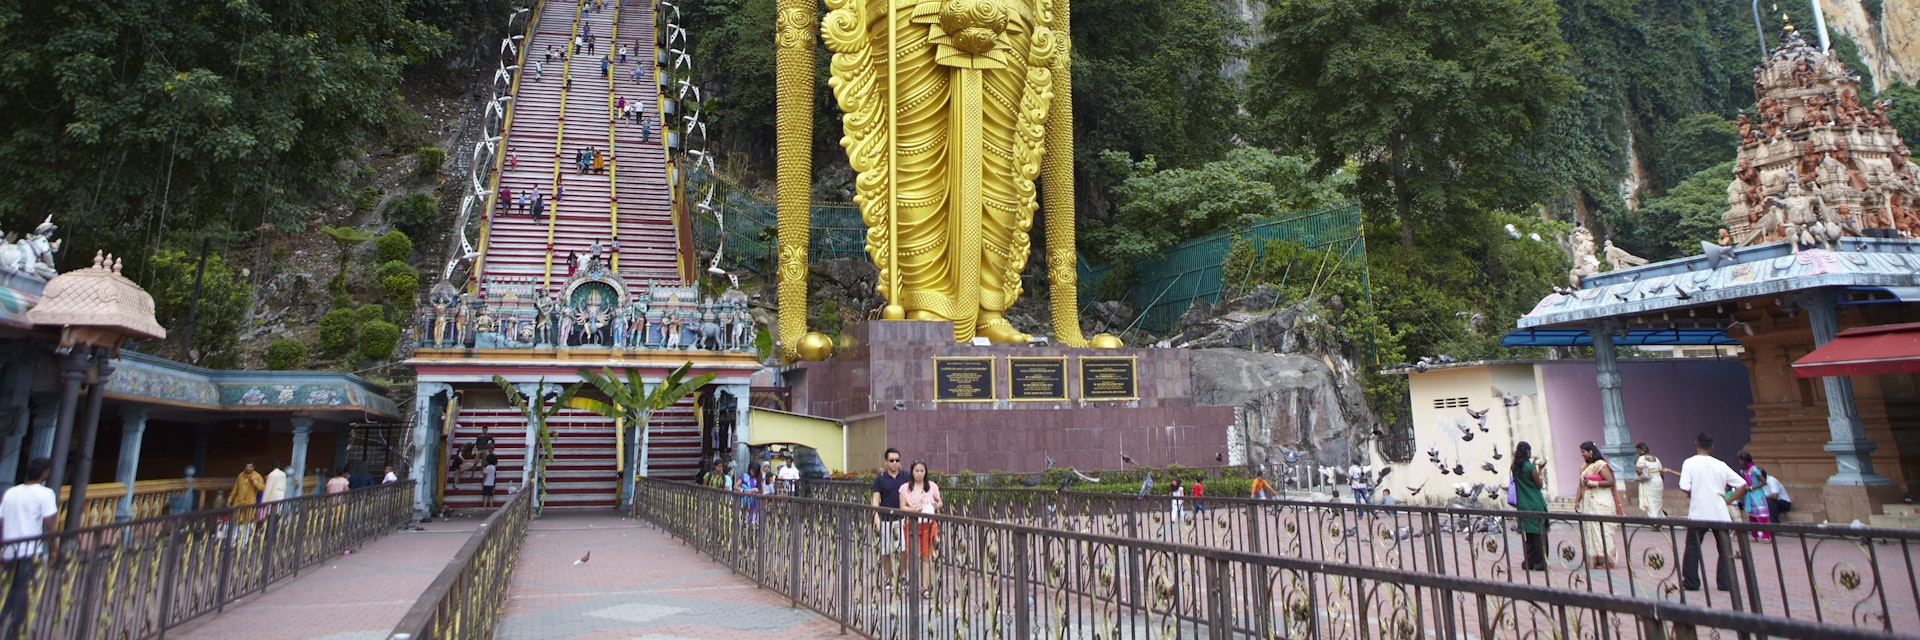 Statue of Hindu god Murugan at Batu Caves.